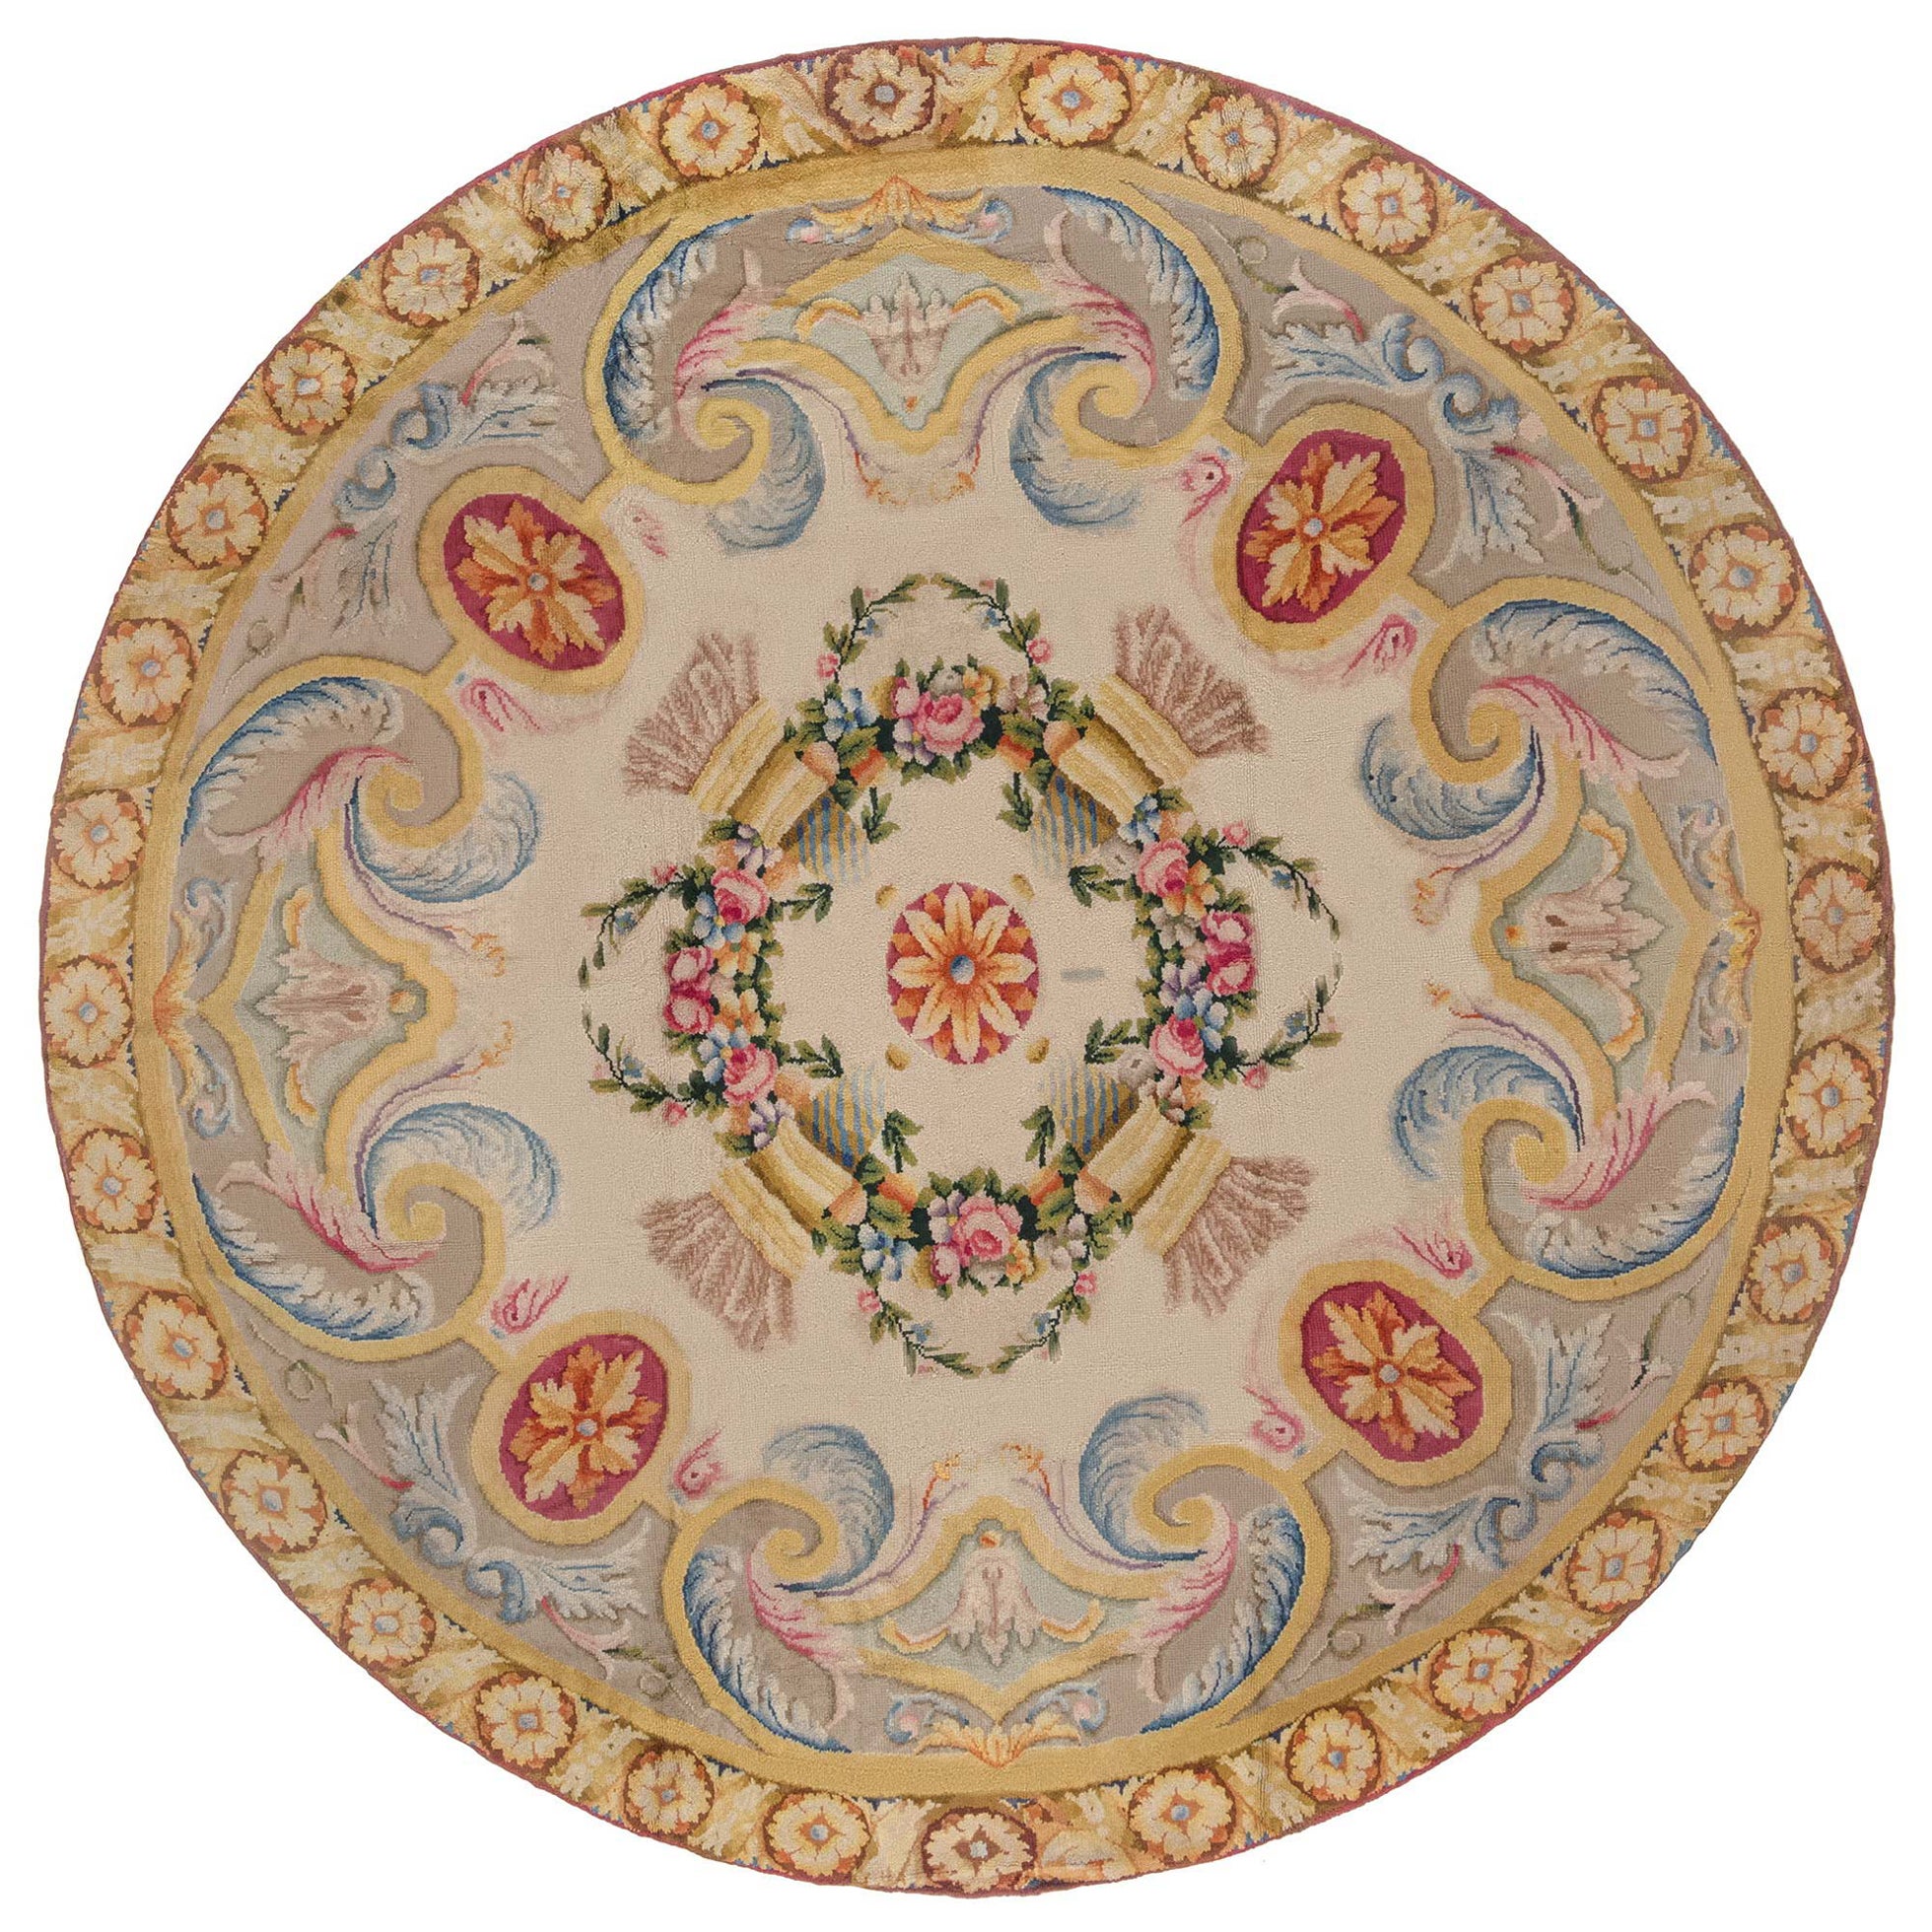 Spanischer Savonnerie-Fragmentteppich aus dem frühen 20. Jahrhundert